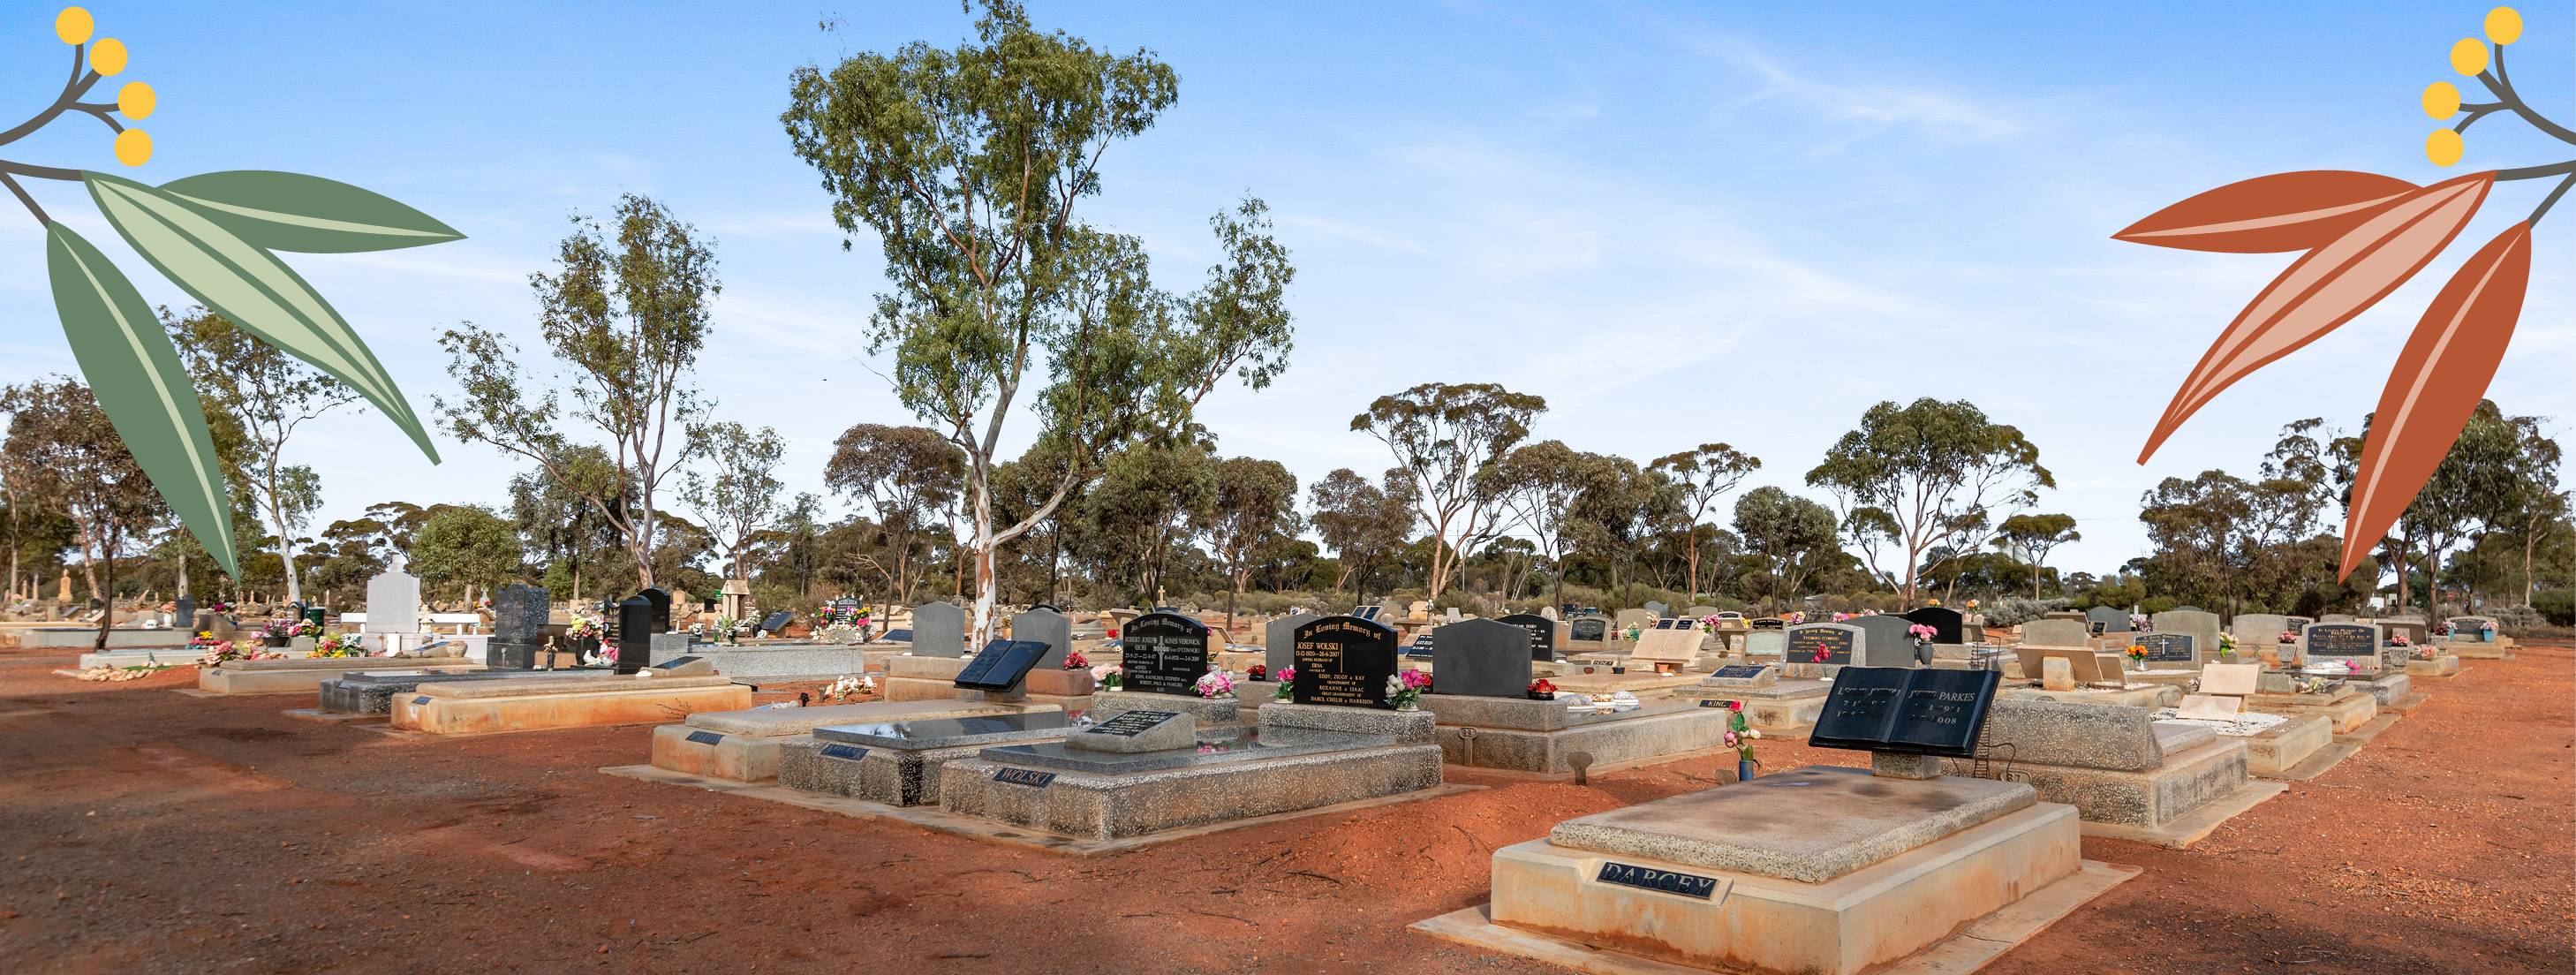 Kalgoorlie Cemetery Board